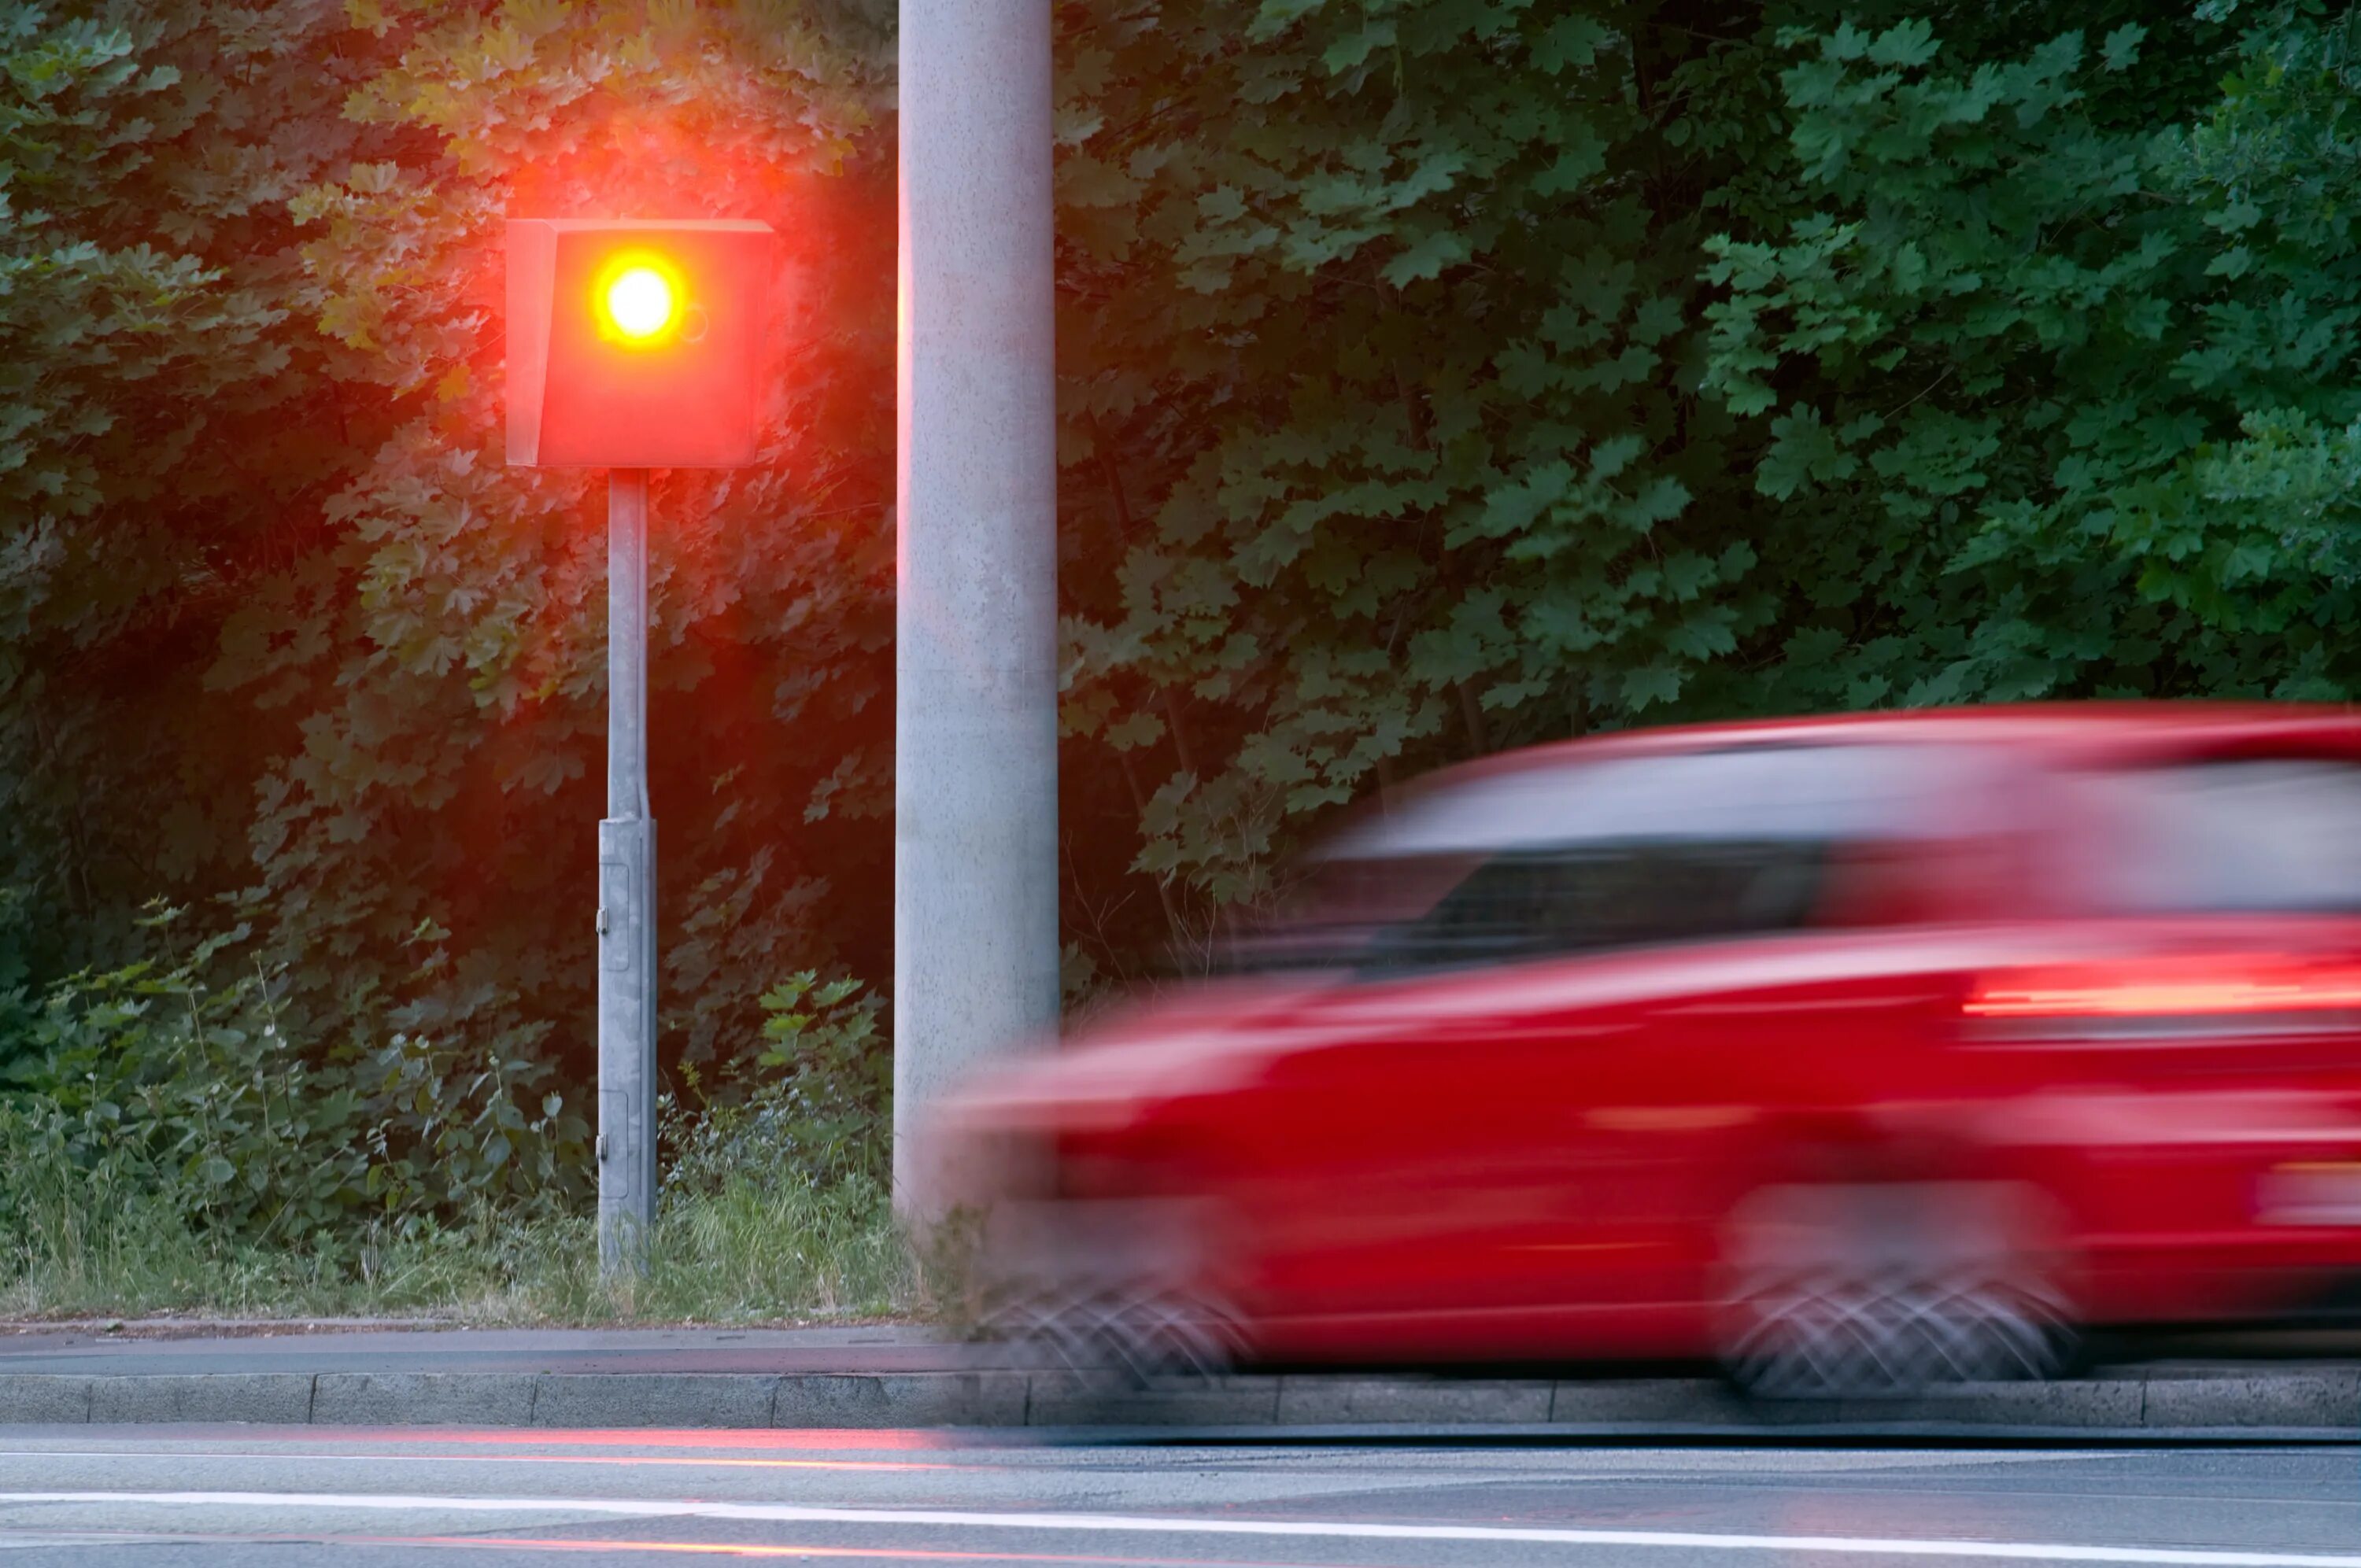 Я лечу на красный свет. Машина проезжает на красный свет. Едет красная машина. Светофор для машин. Красный свет светофора.